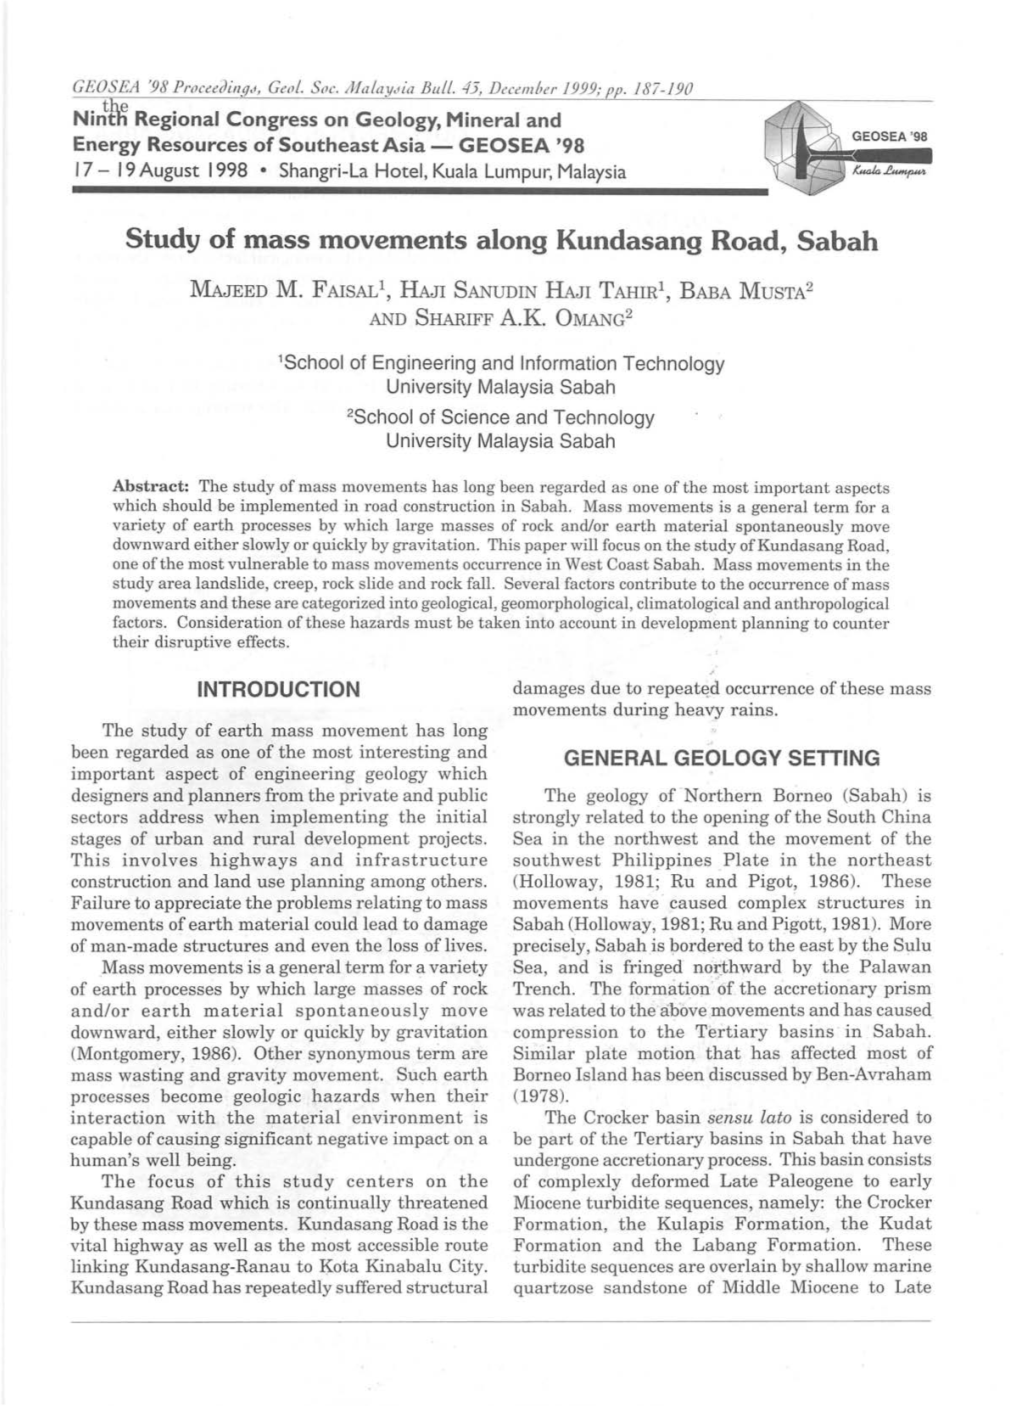 Study of Mass Movements Along Kundasang Road, Sabah